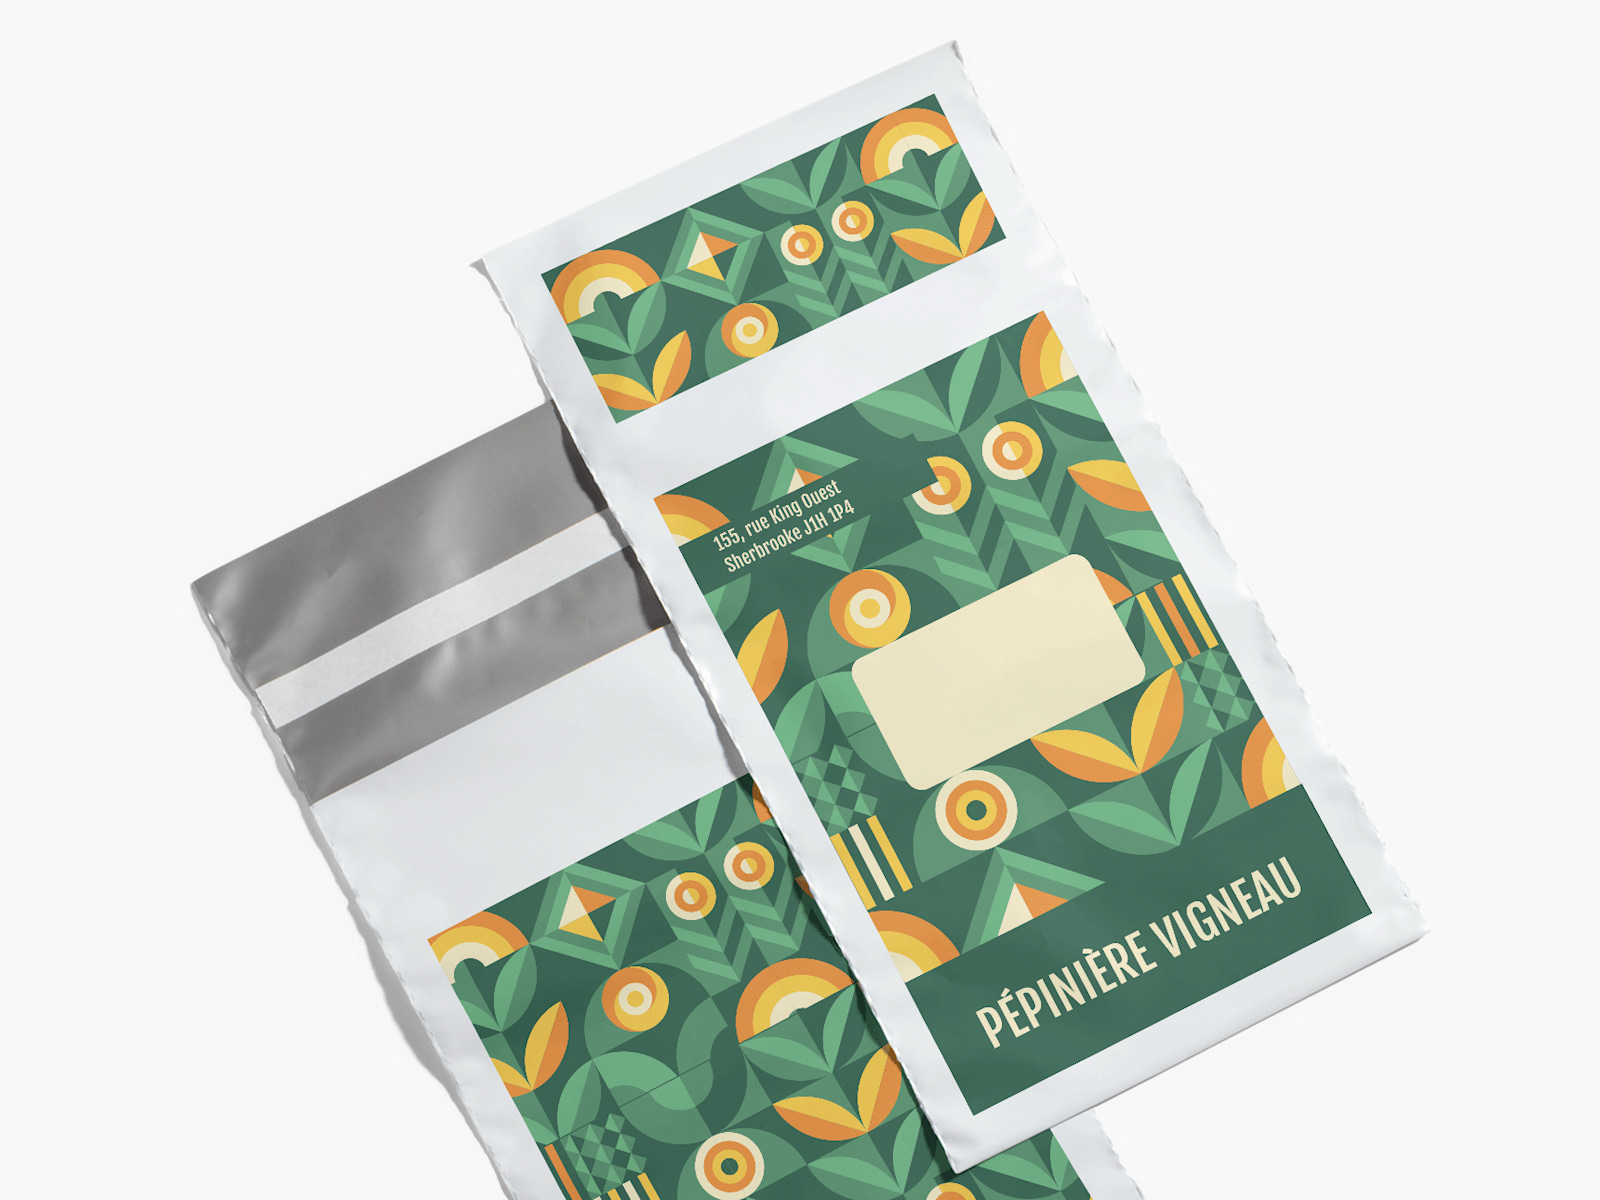 Une enveloppe en plastique faisant la promotion d’une entreprise de produits naturels, imprimée au recto et au verso.